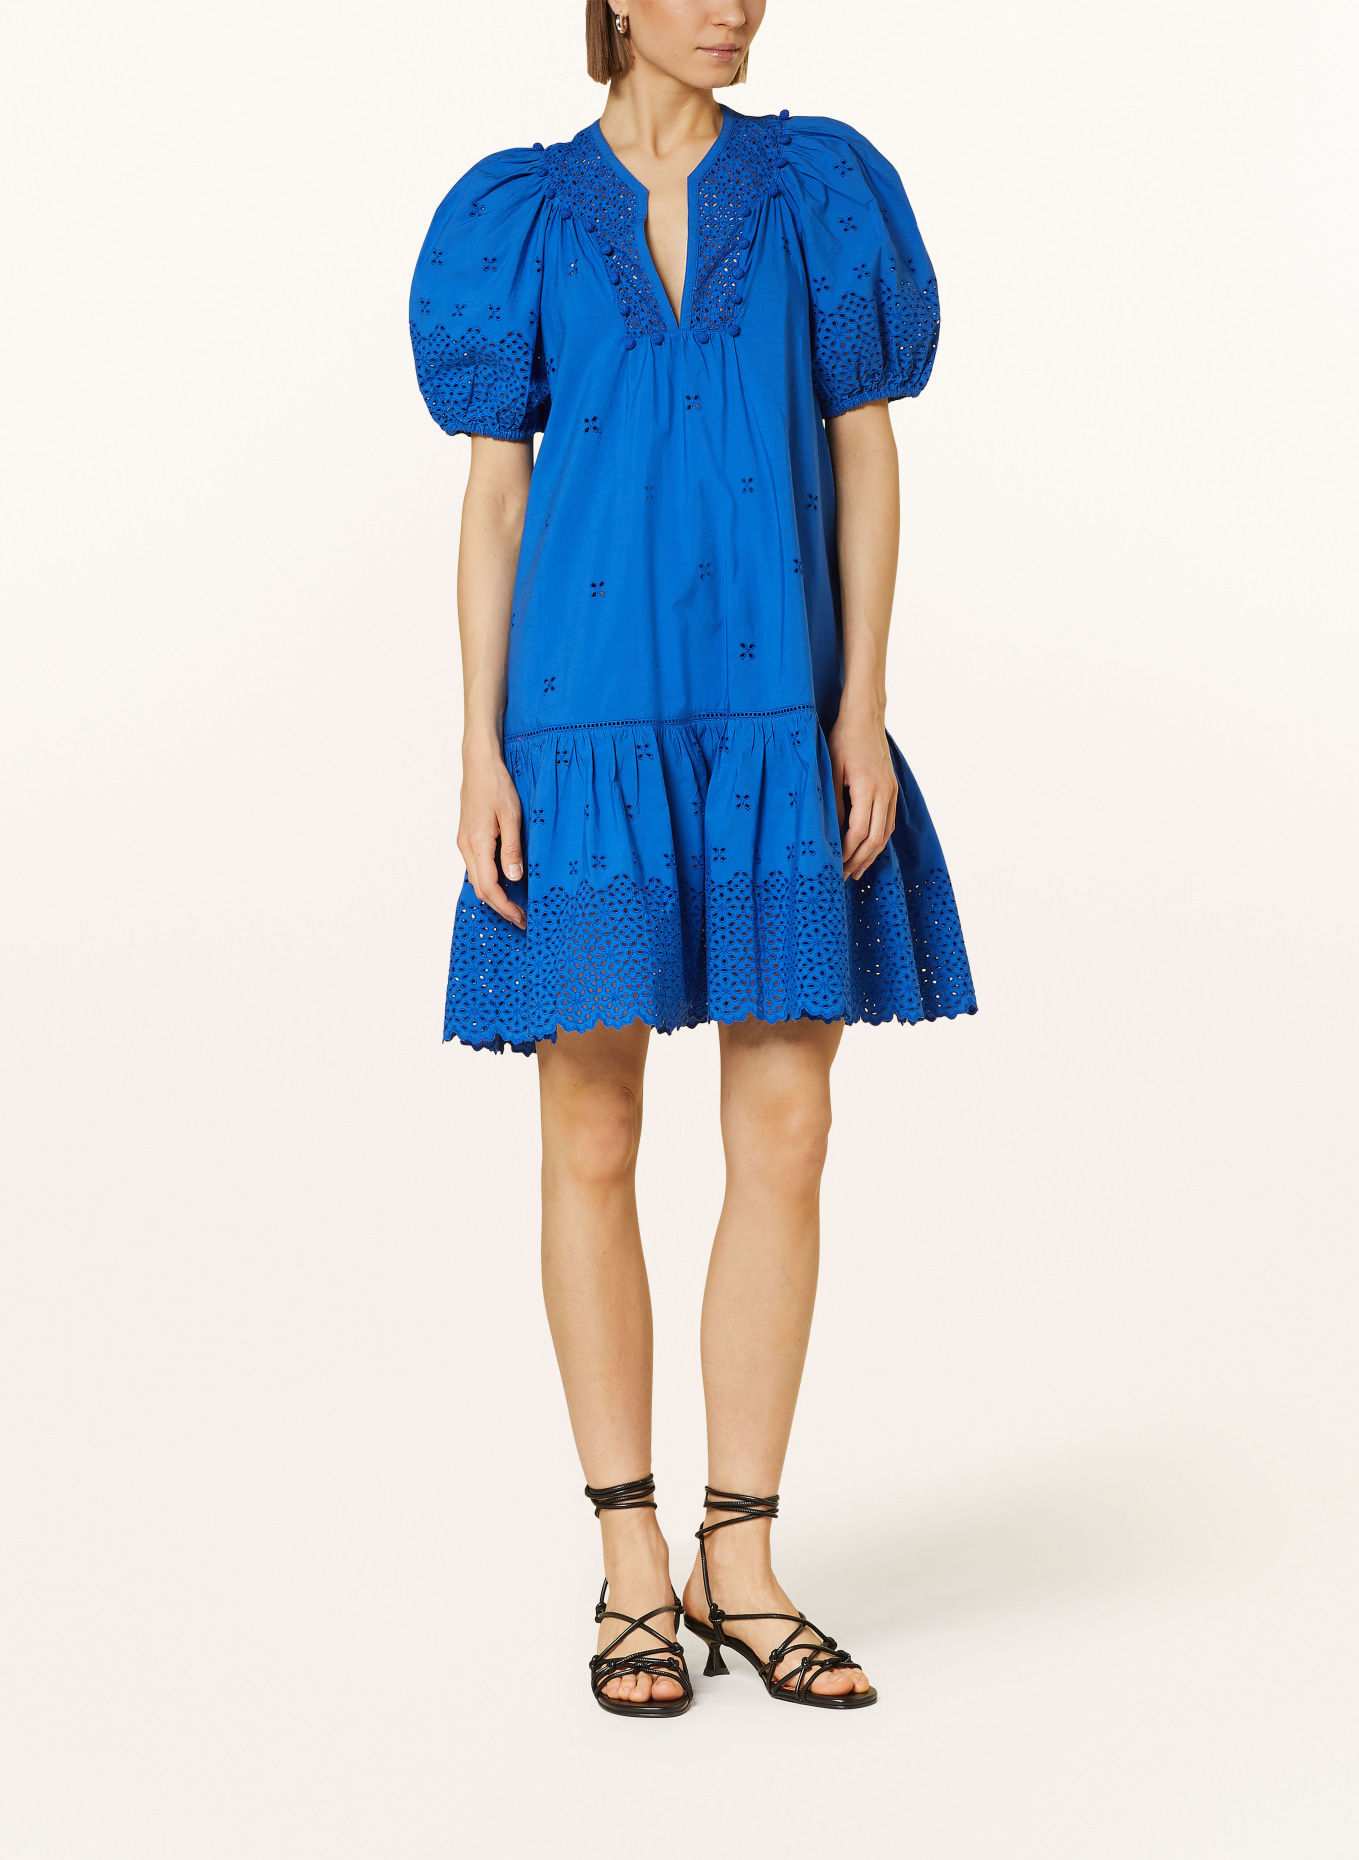 ULLA JOHNSON Kleid AURORA mit Spitze, Farbe: BLAU (Bild 2)